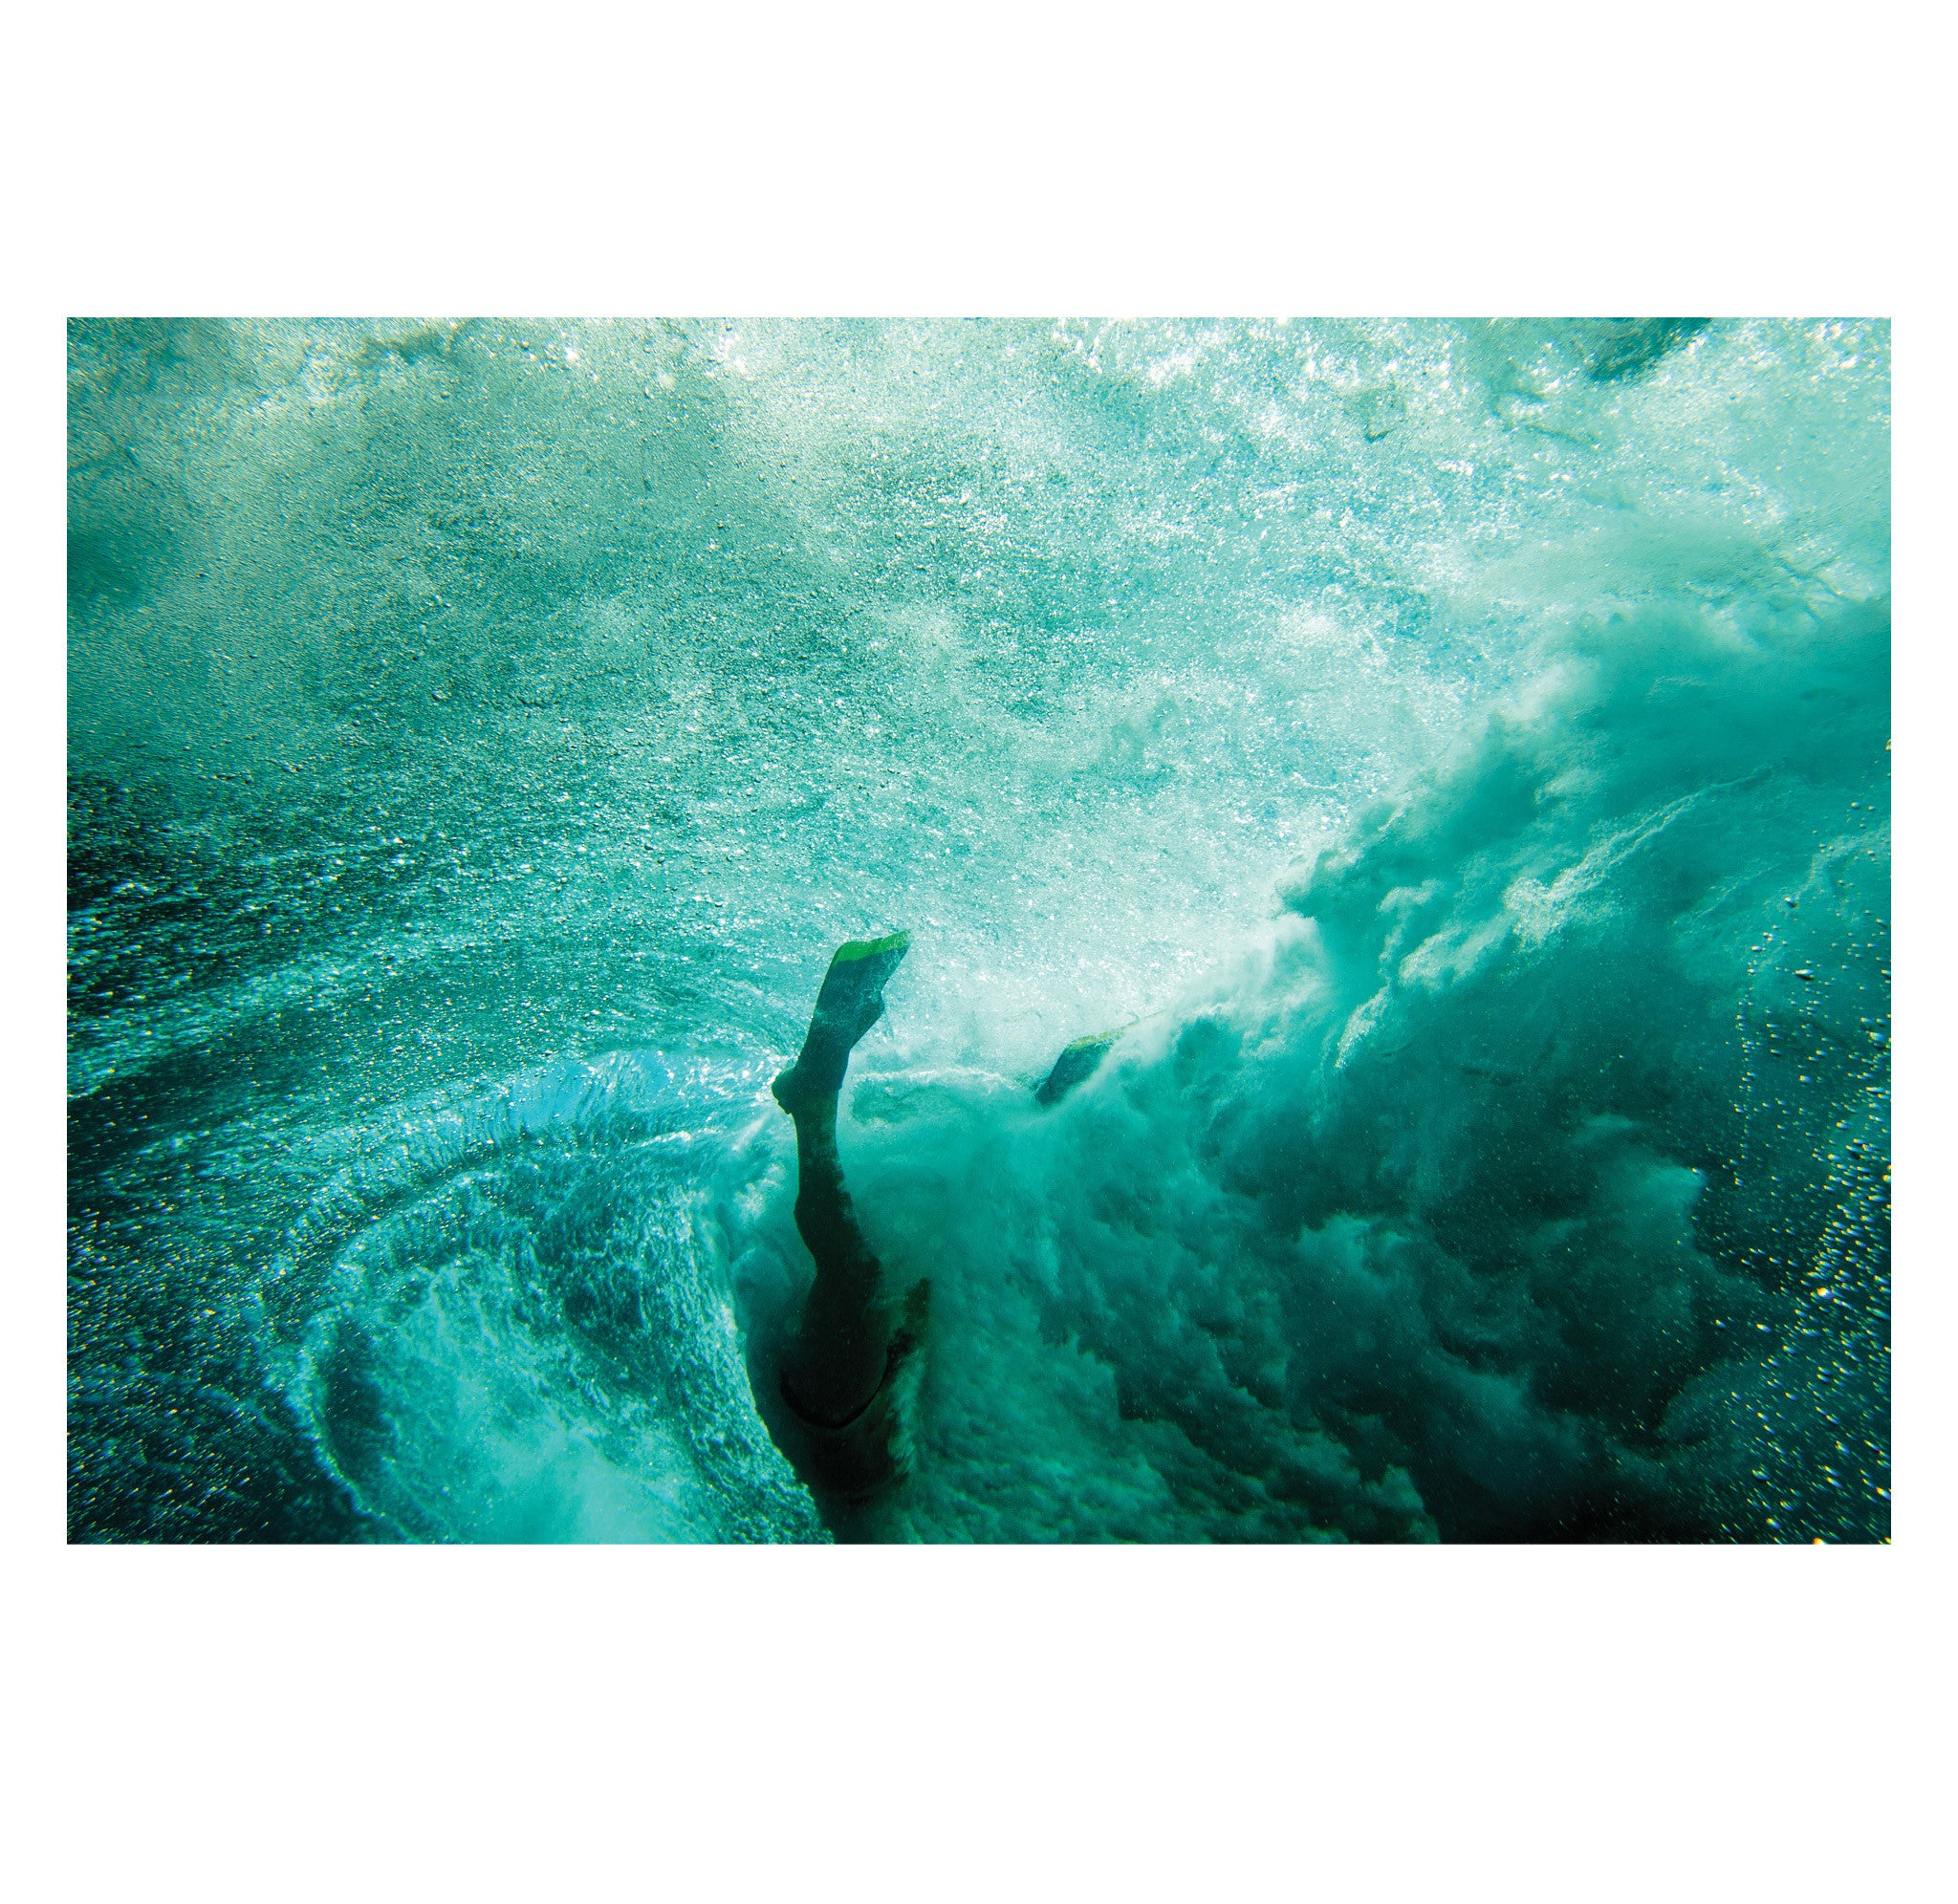 Chris Burkard – Dan Malloy, Tahiti